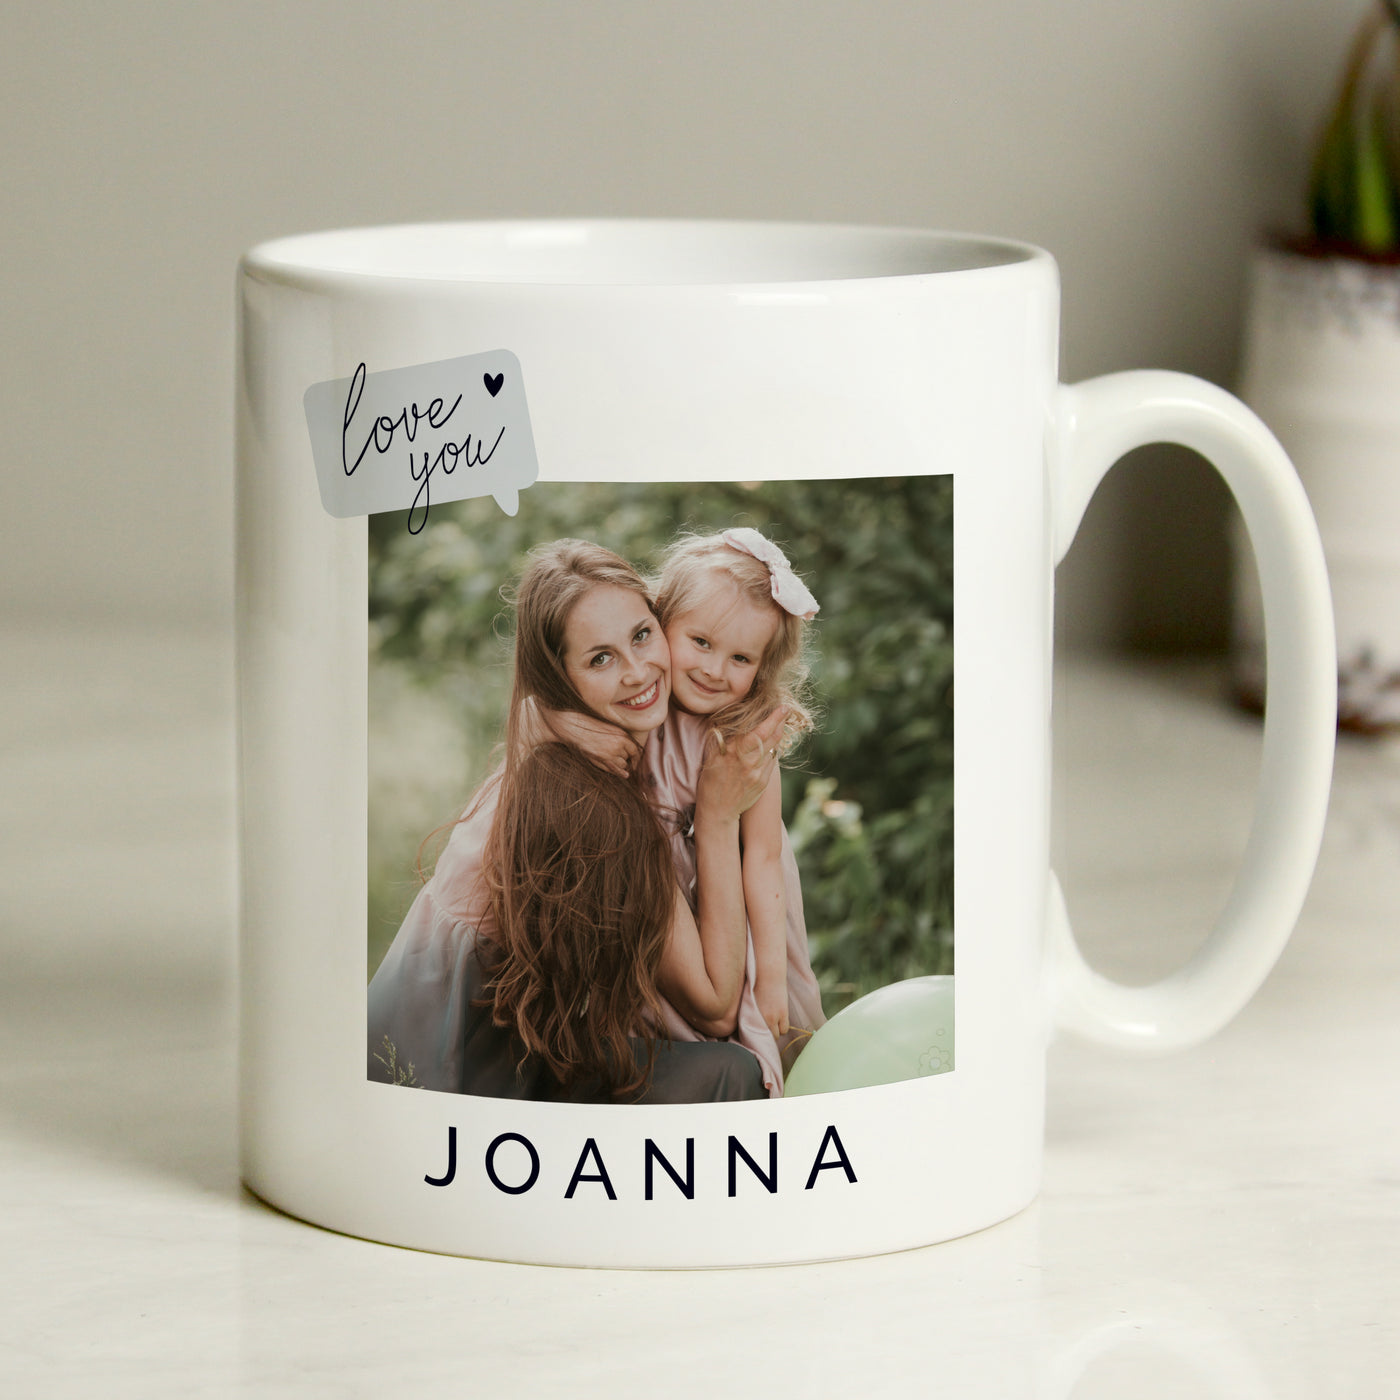 Personalised Love You Snapshot Photo Upload Ceramic Mug